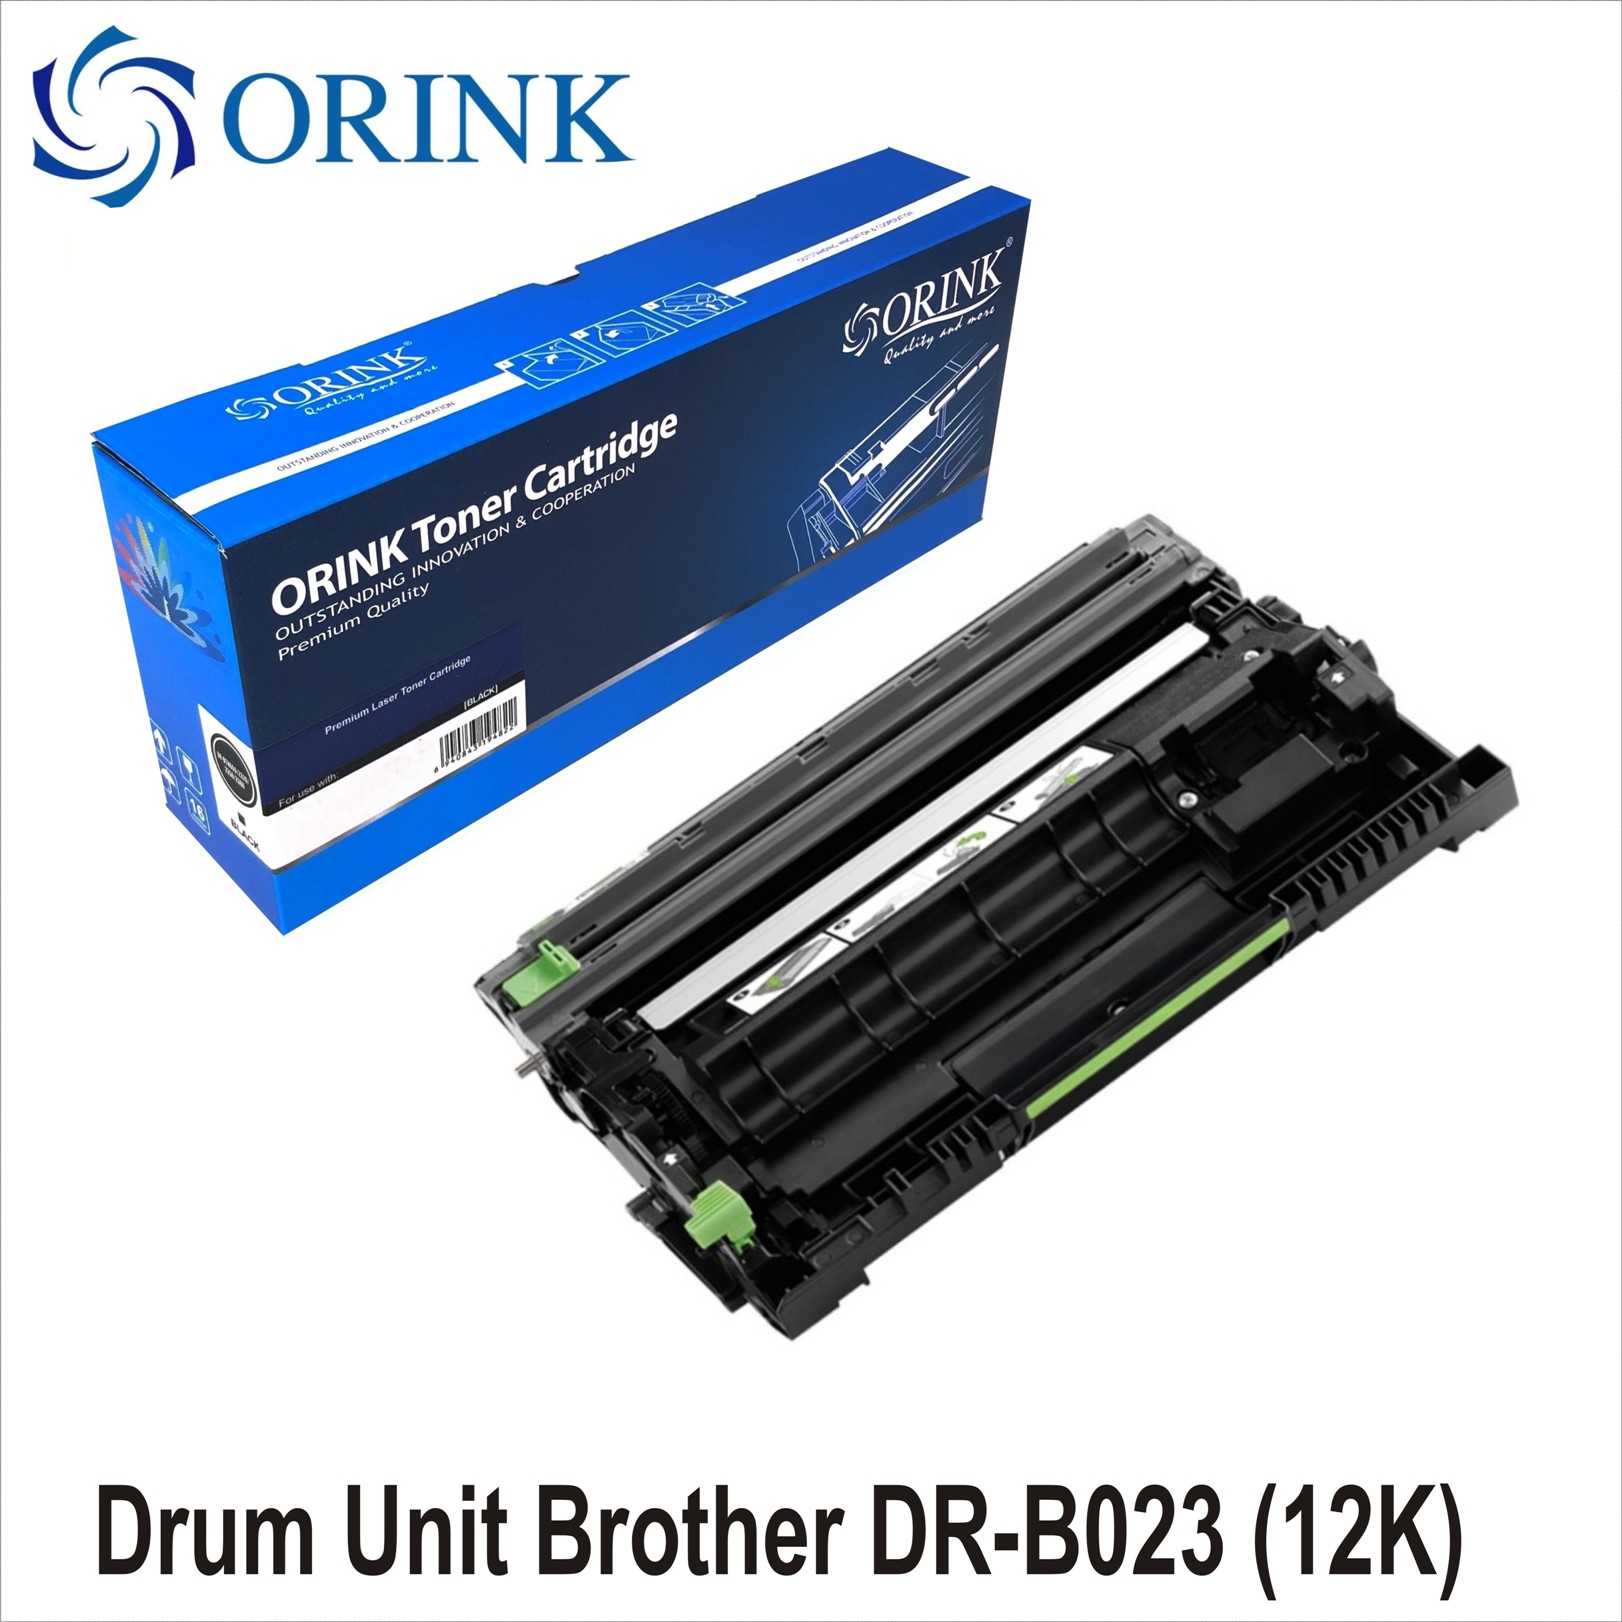 Drum Unit Brother DR-B023 (12K) ORINK